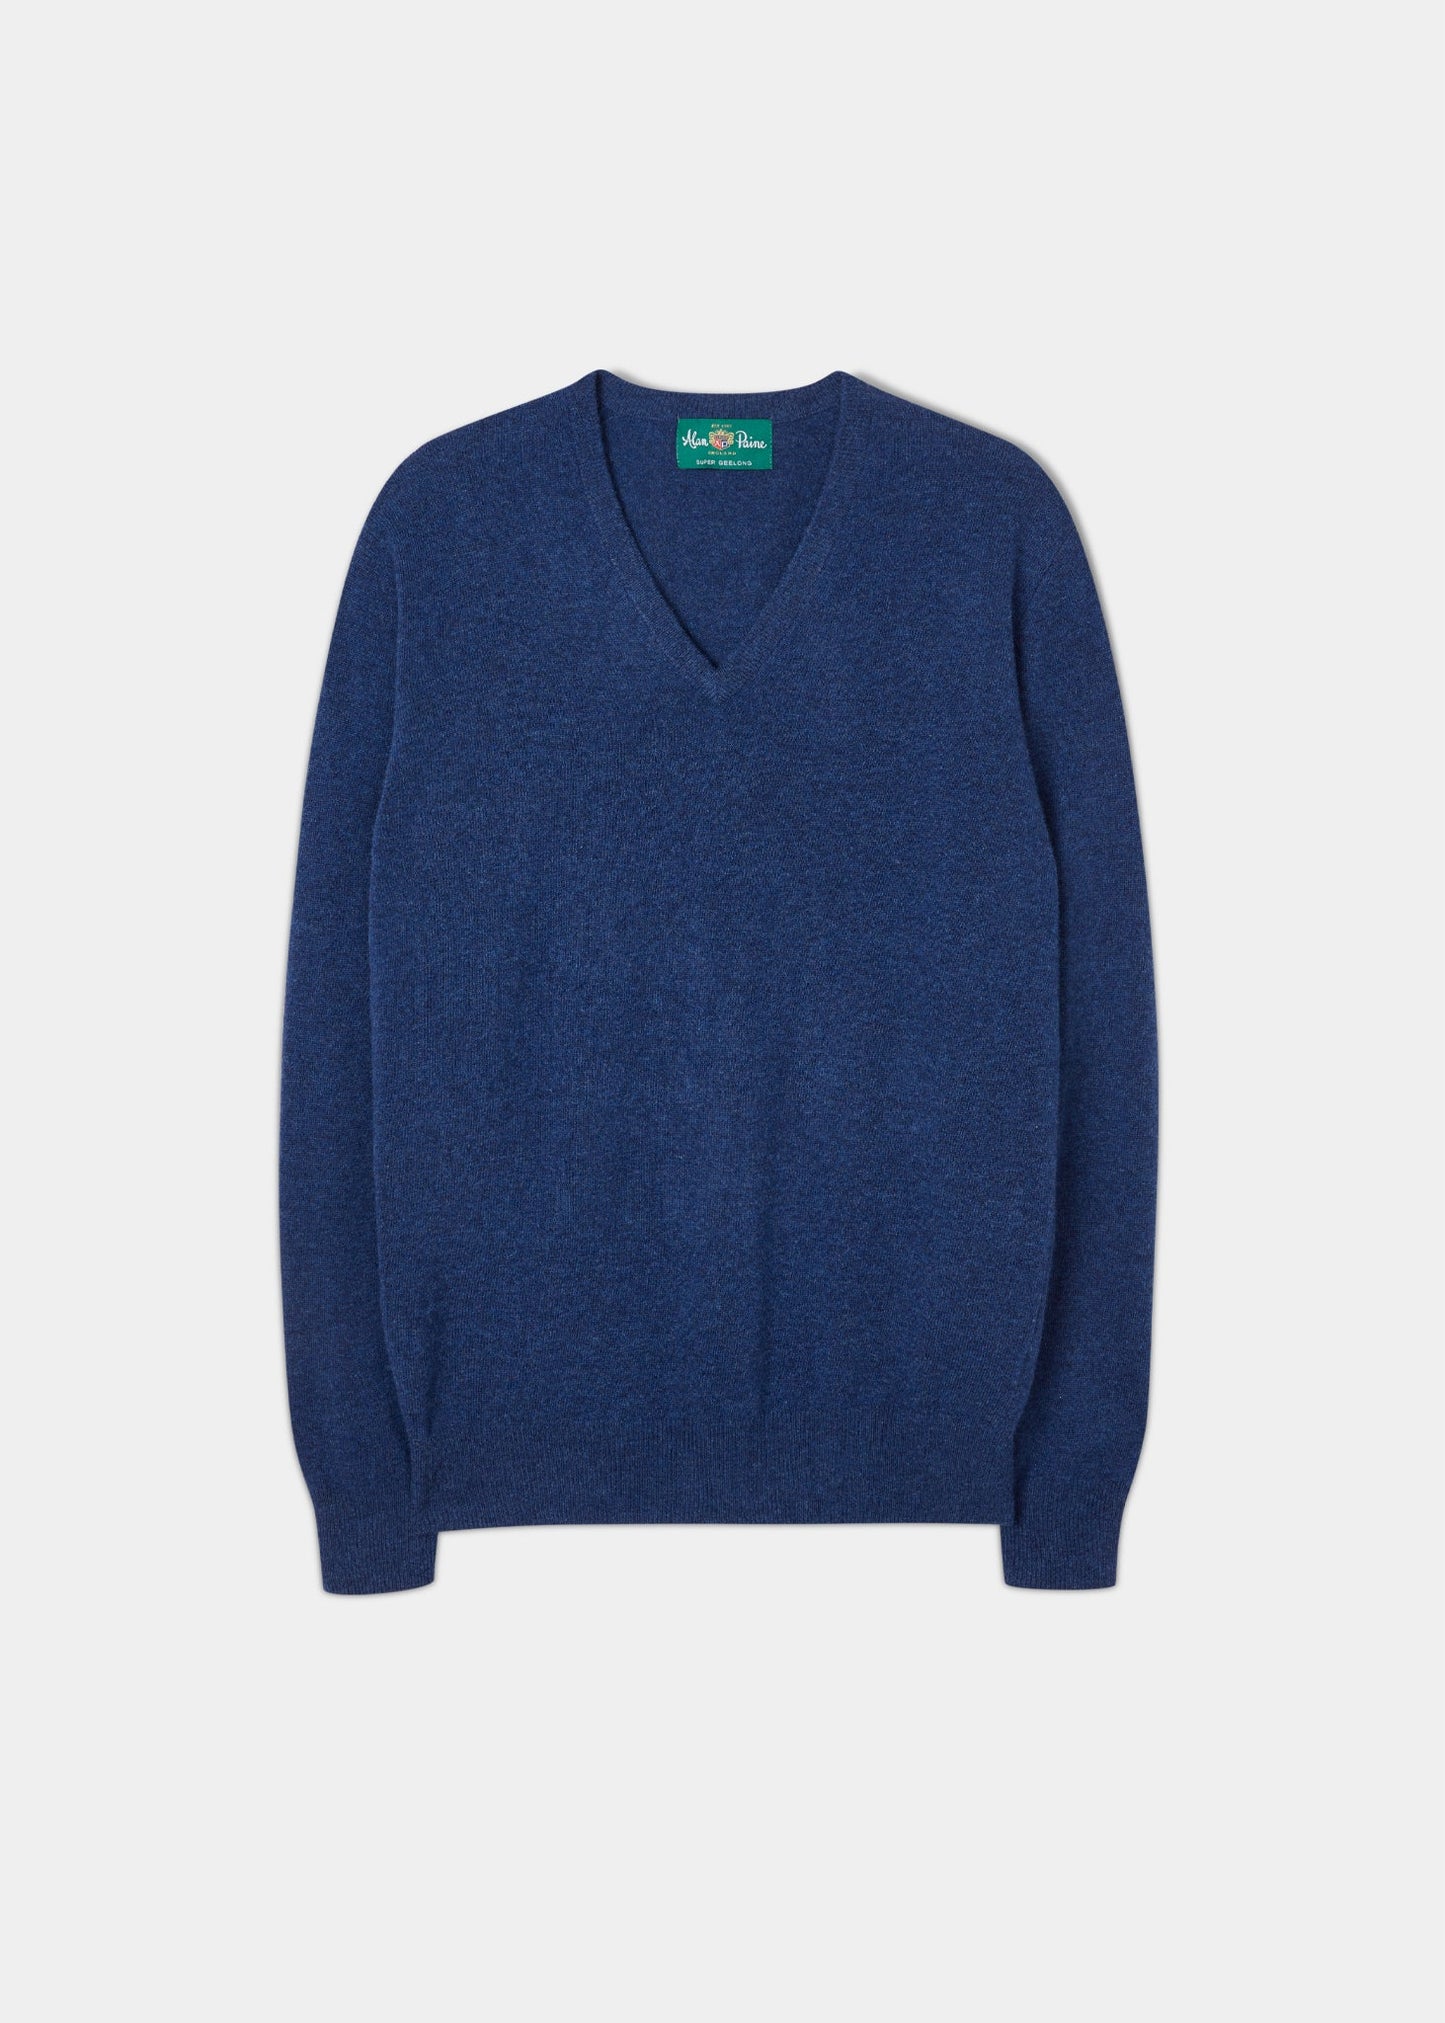 geelong-wool-vee-neck-sweater-indigo